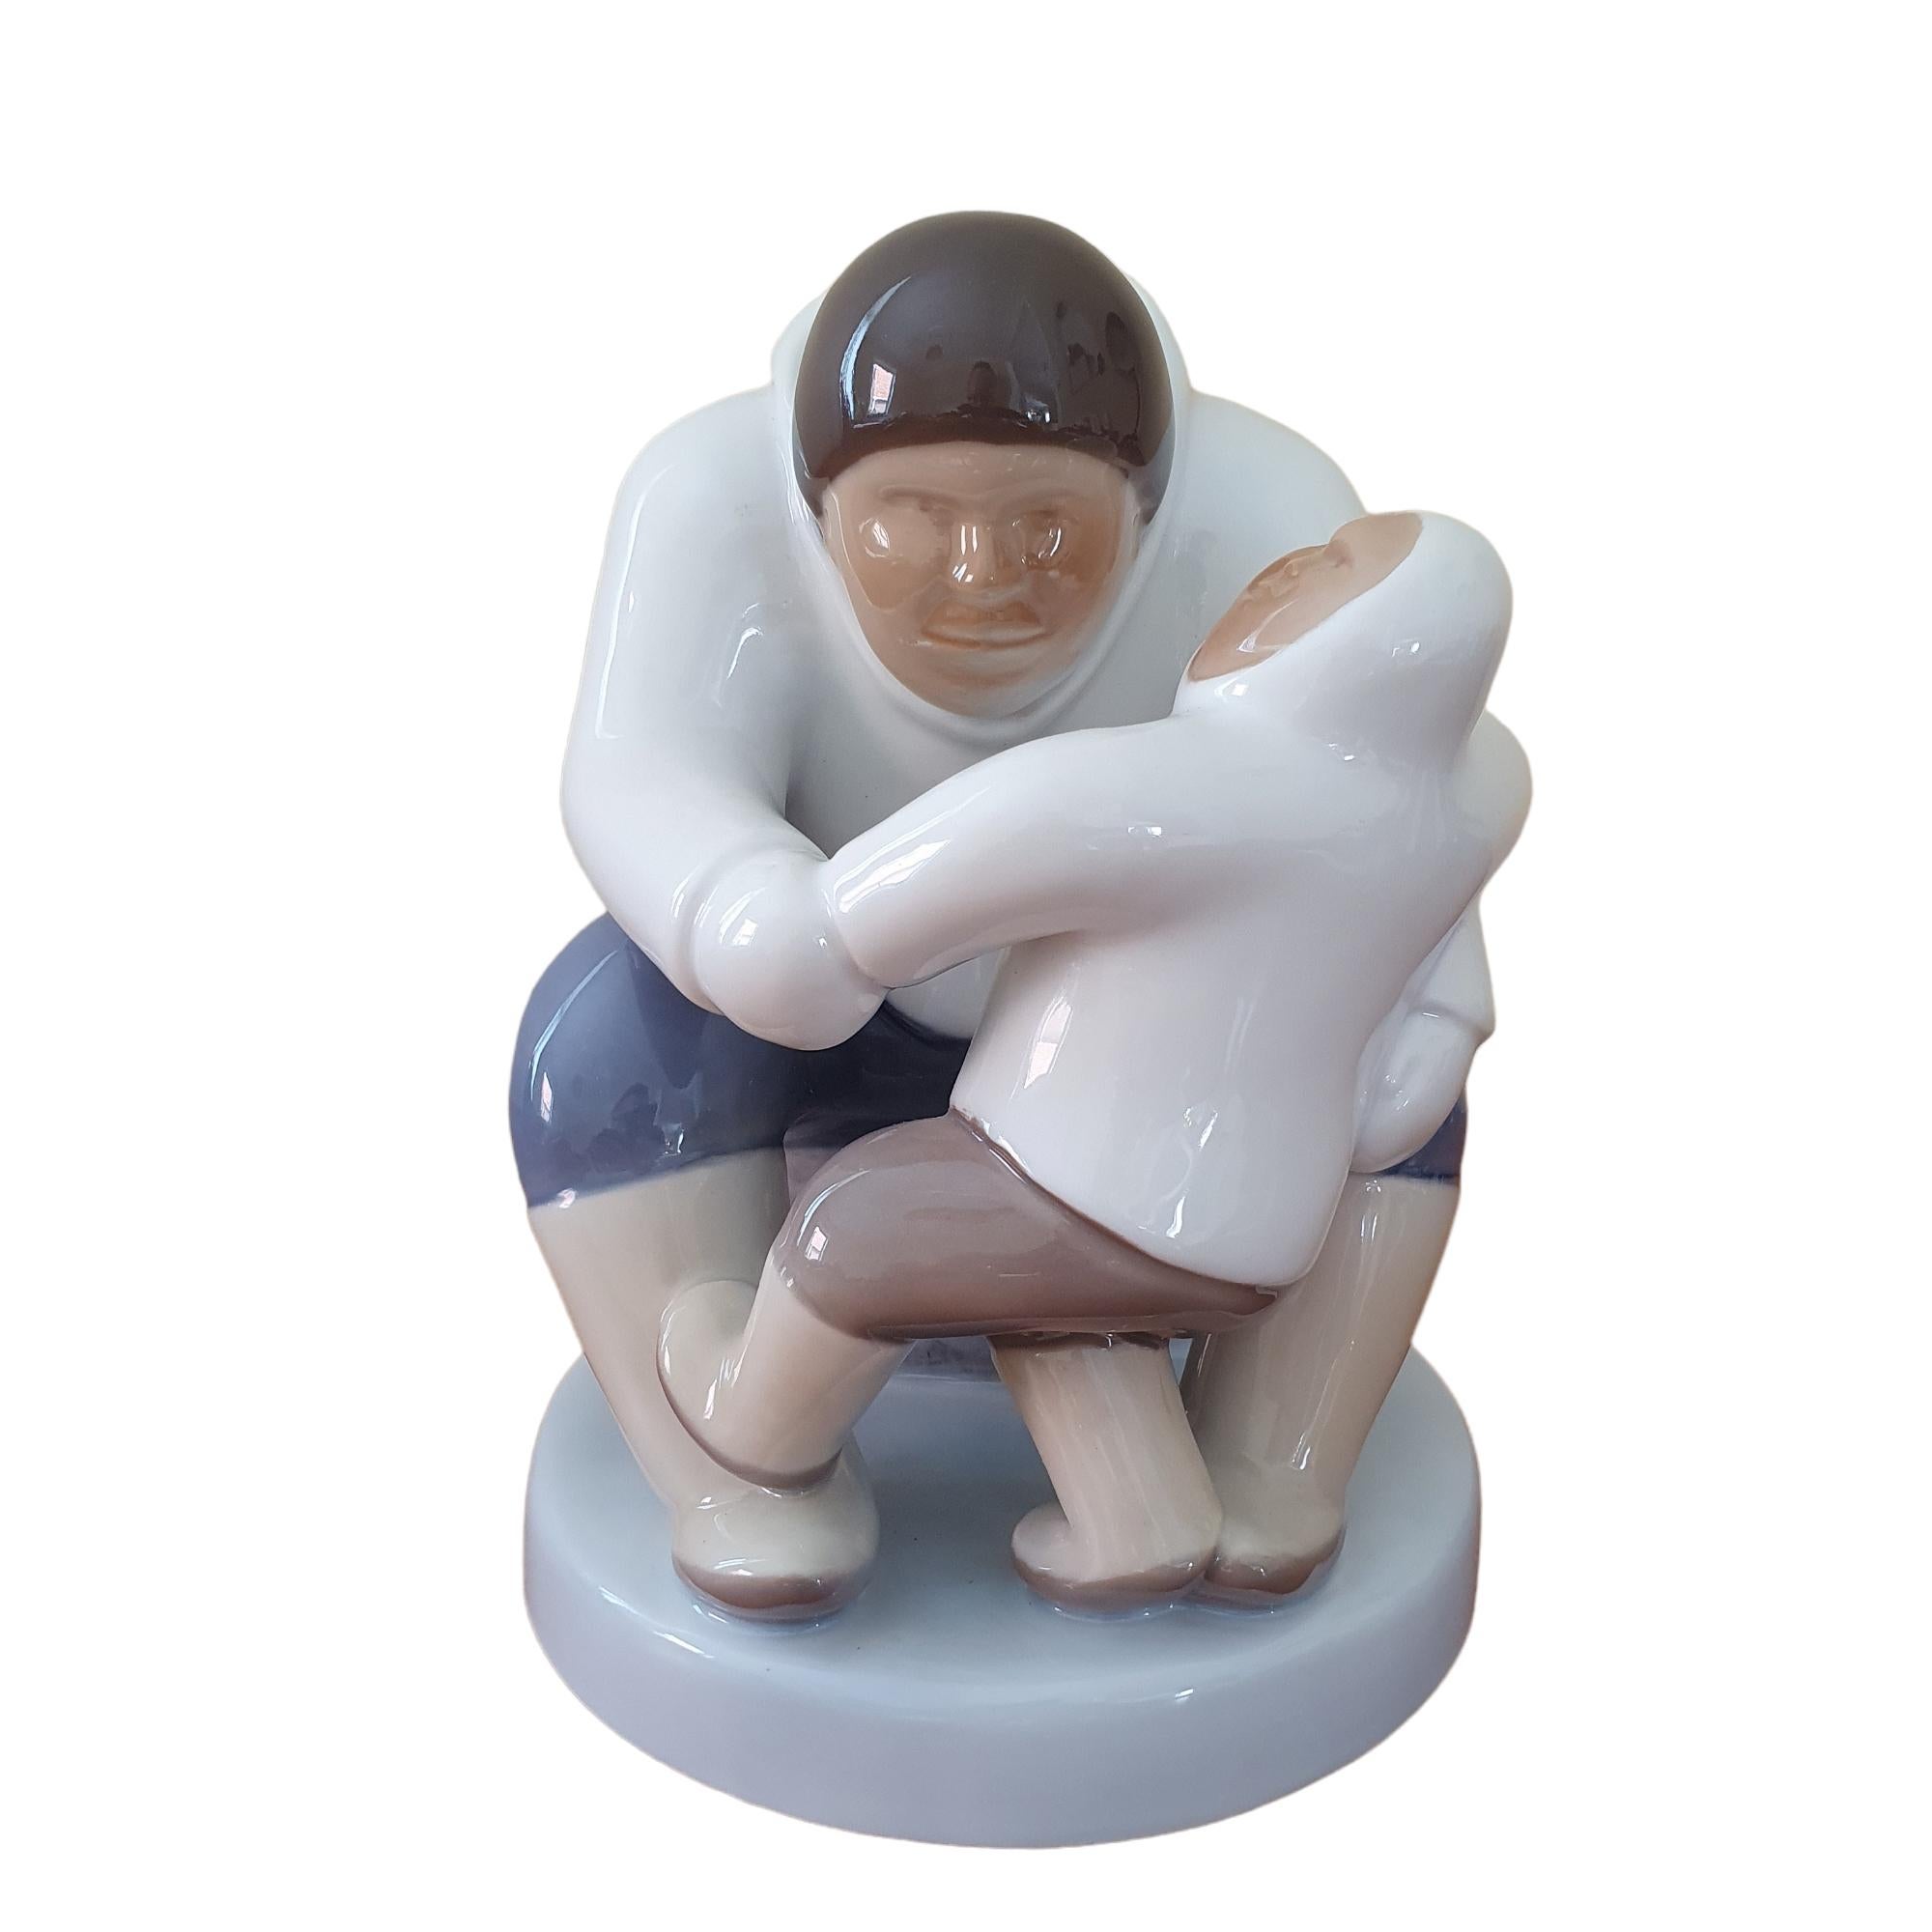 Greenlandic Parent and Child Porcelain Figurine In Good Condition For Sale In Brønshøj, DK